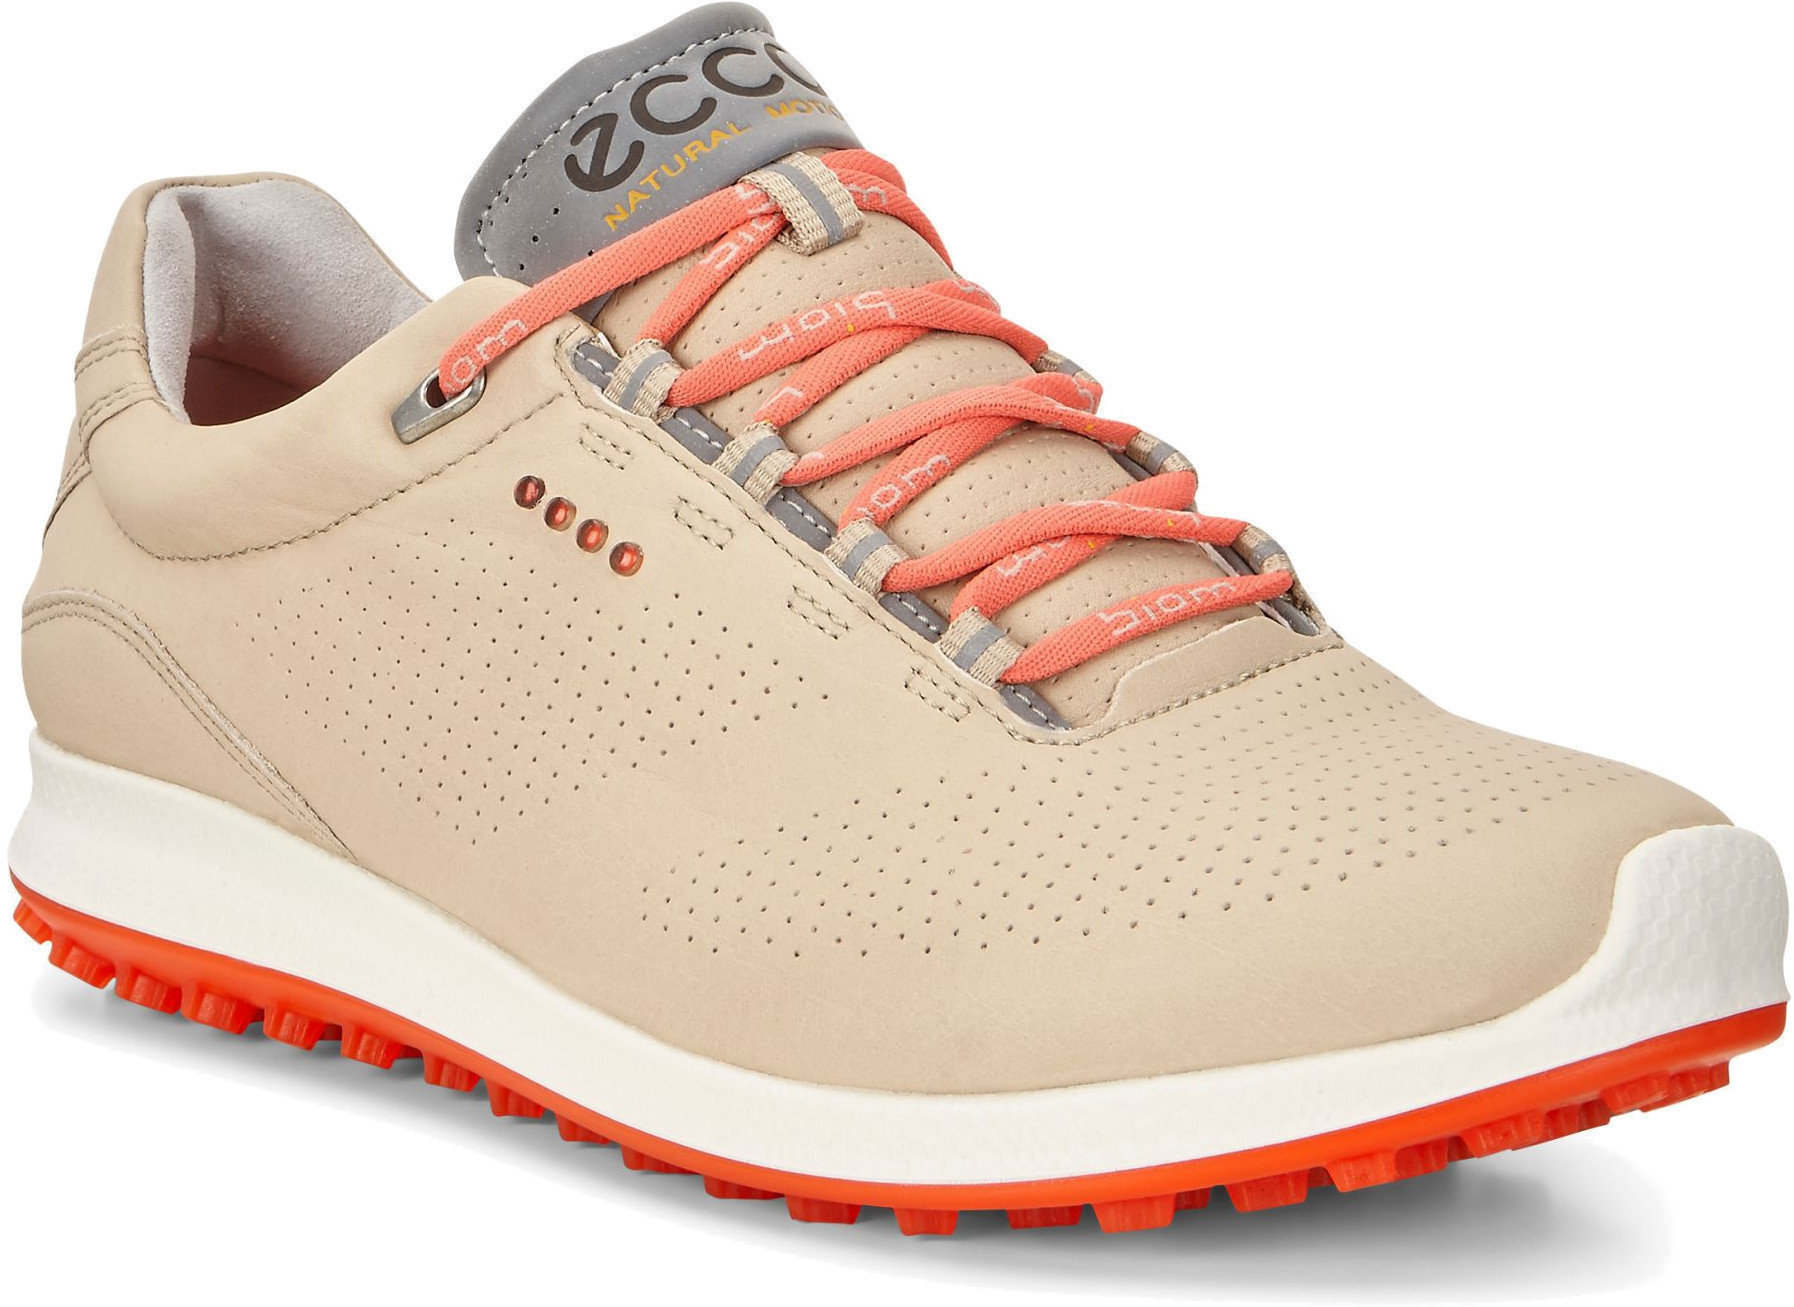 Calzado de golf de mujer Ecco Biom Hybrid 2 Womens Golf Shoes Oyester/Coral Blush 40